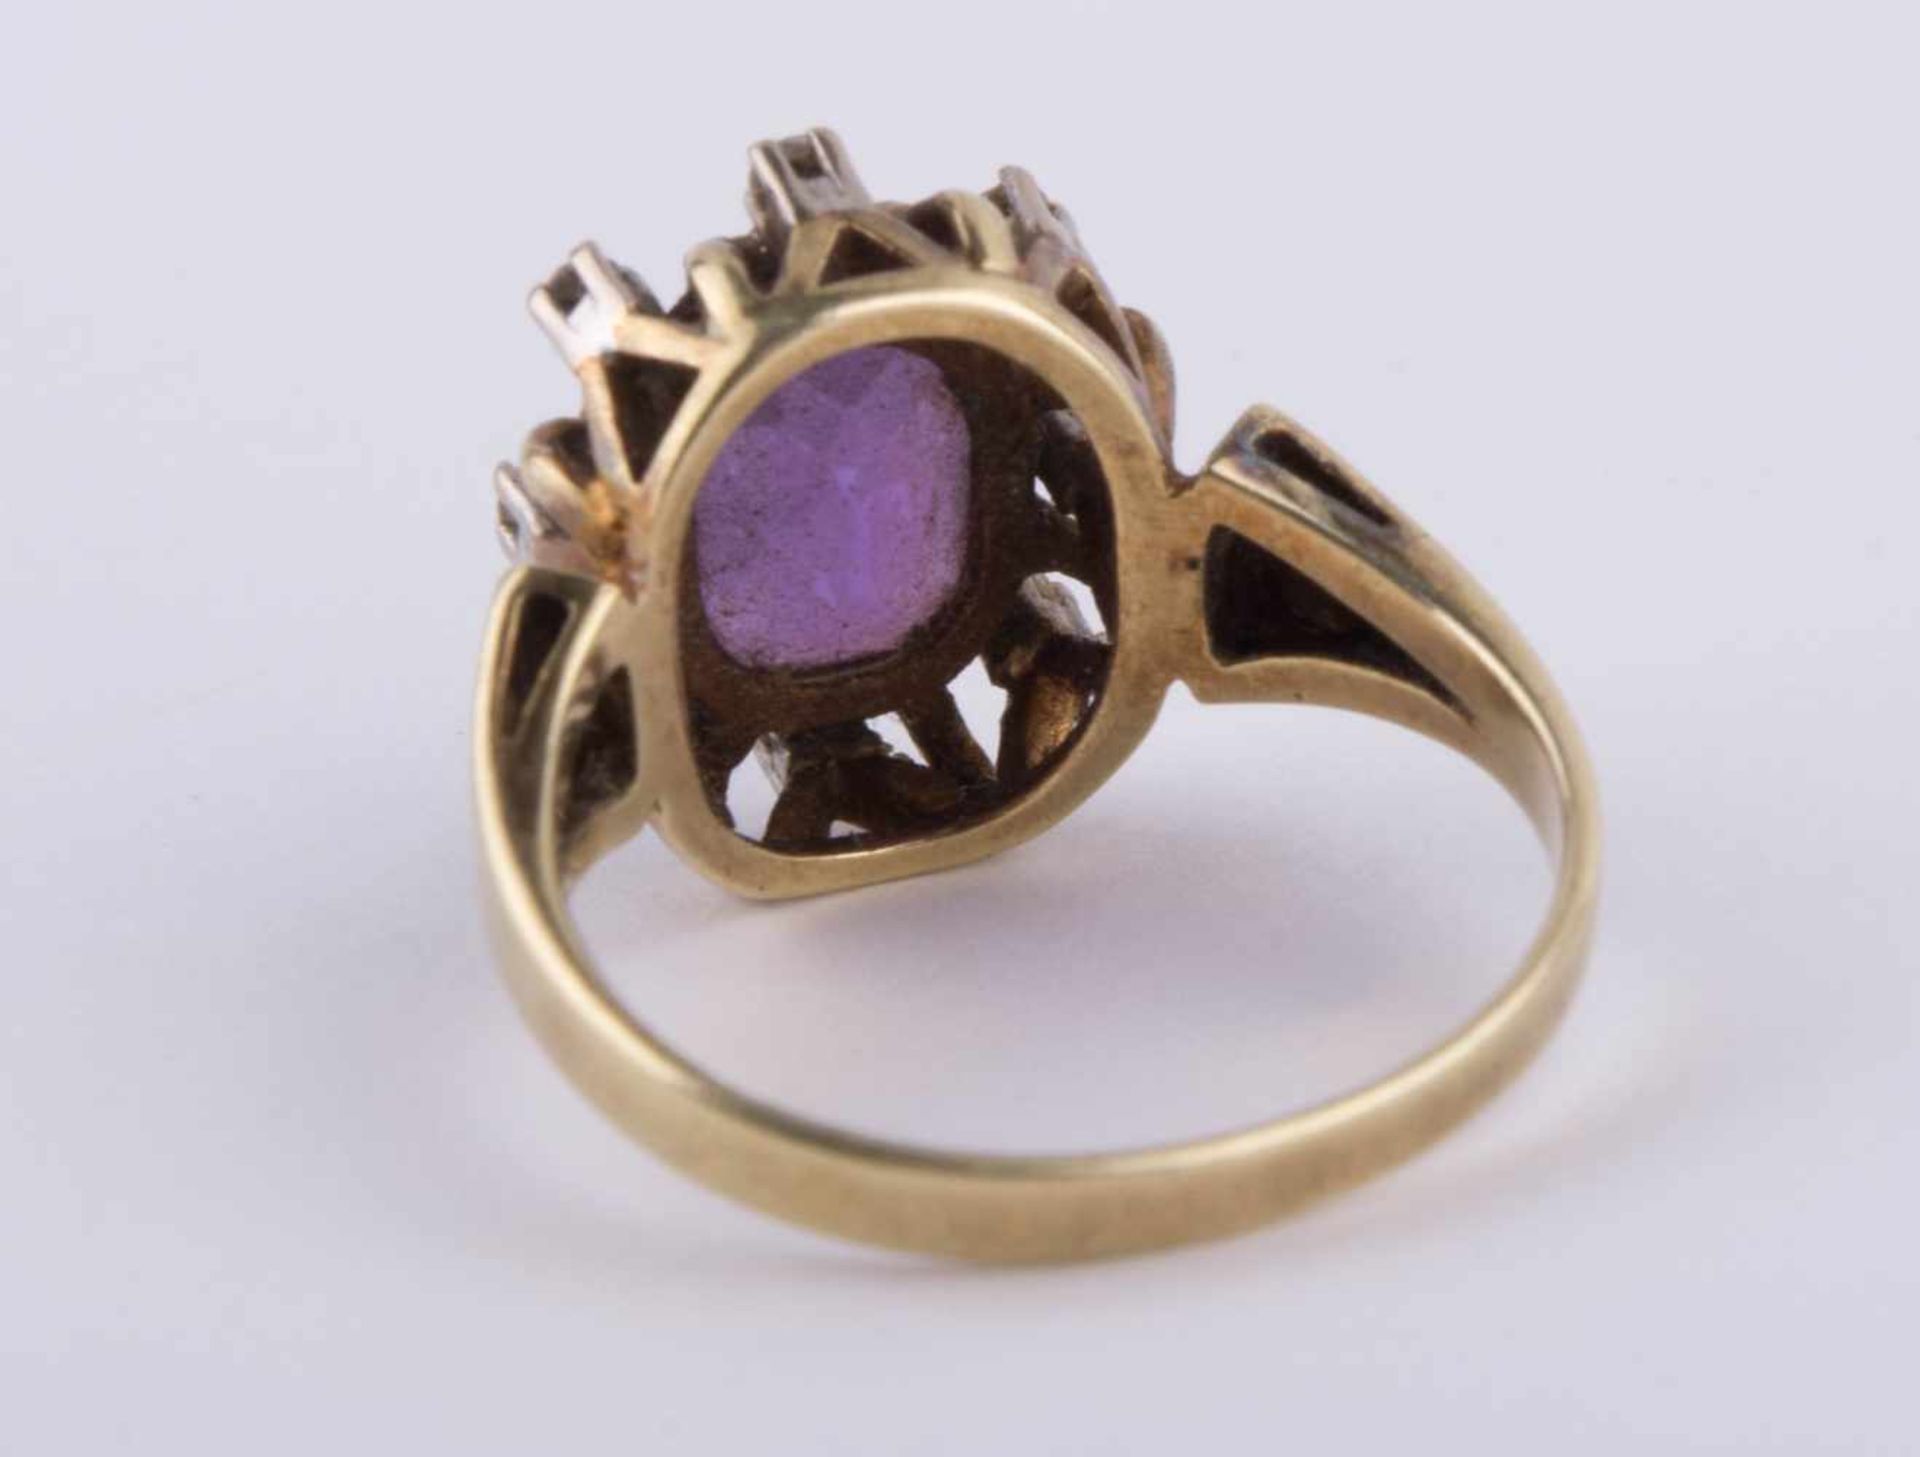 Damen Amethyst-Diamantring / Women's amethyst-diamond gold ring GG 585/000, RG ca. 58, 8 kleine - Bild 8 aus 10